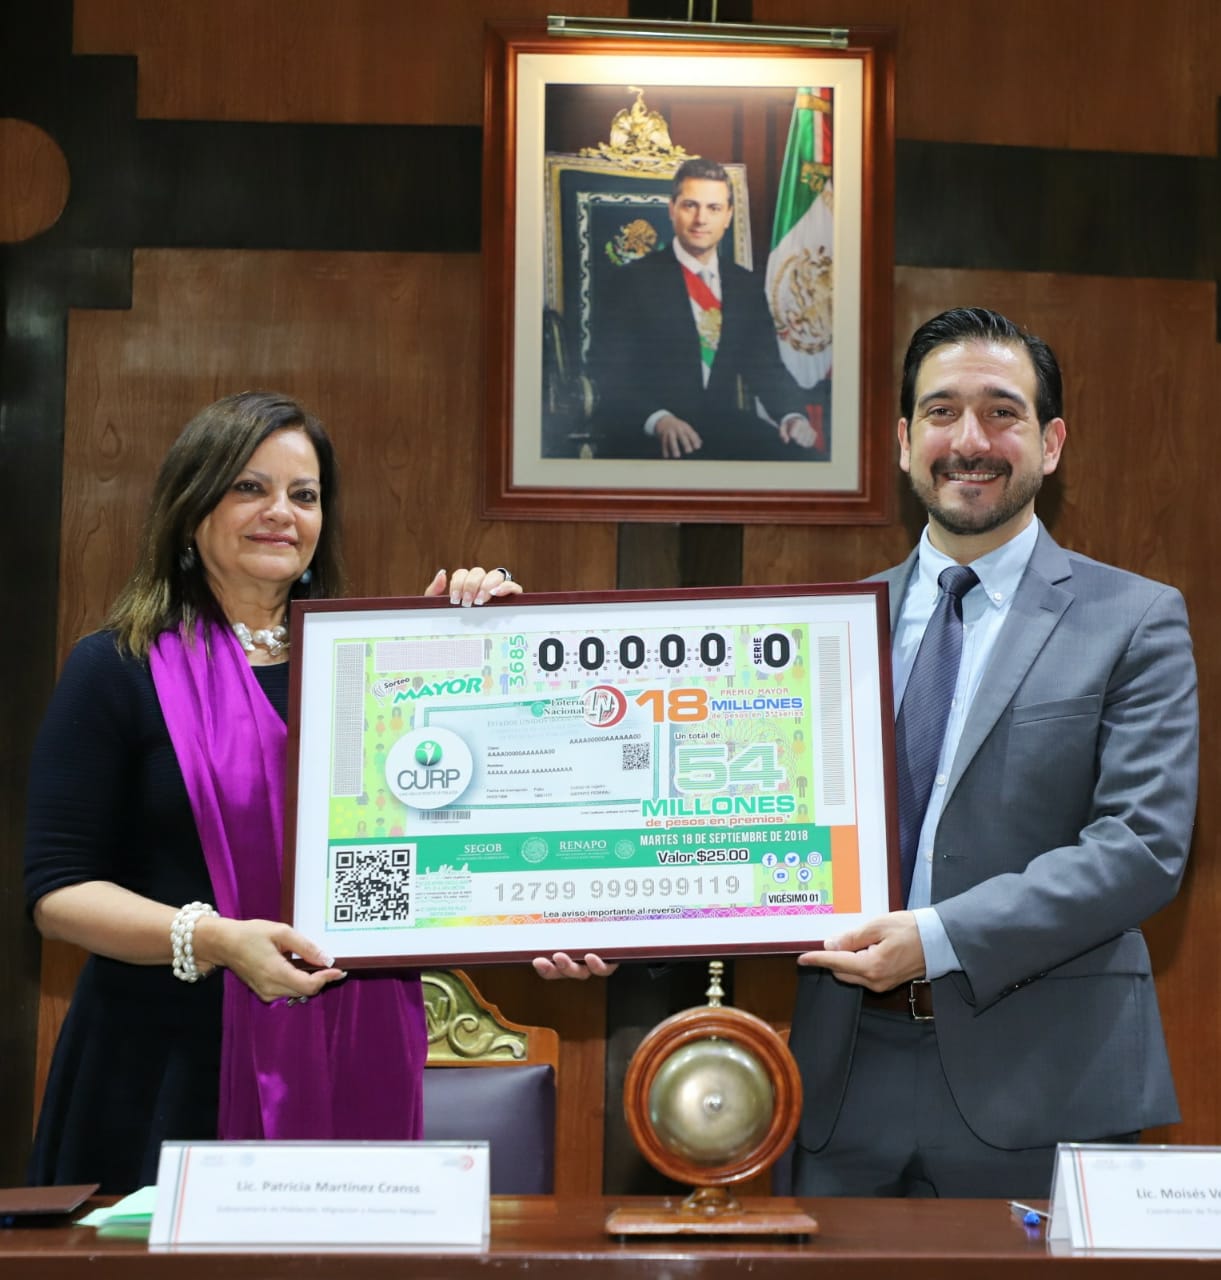 Fotografía donde posan con el billete del Sorteo Mayor, de izquierda a derecha: Patricia Martínez Cranss y Moisés Velasco Navarro.